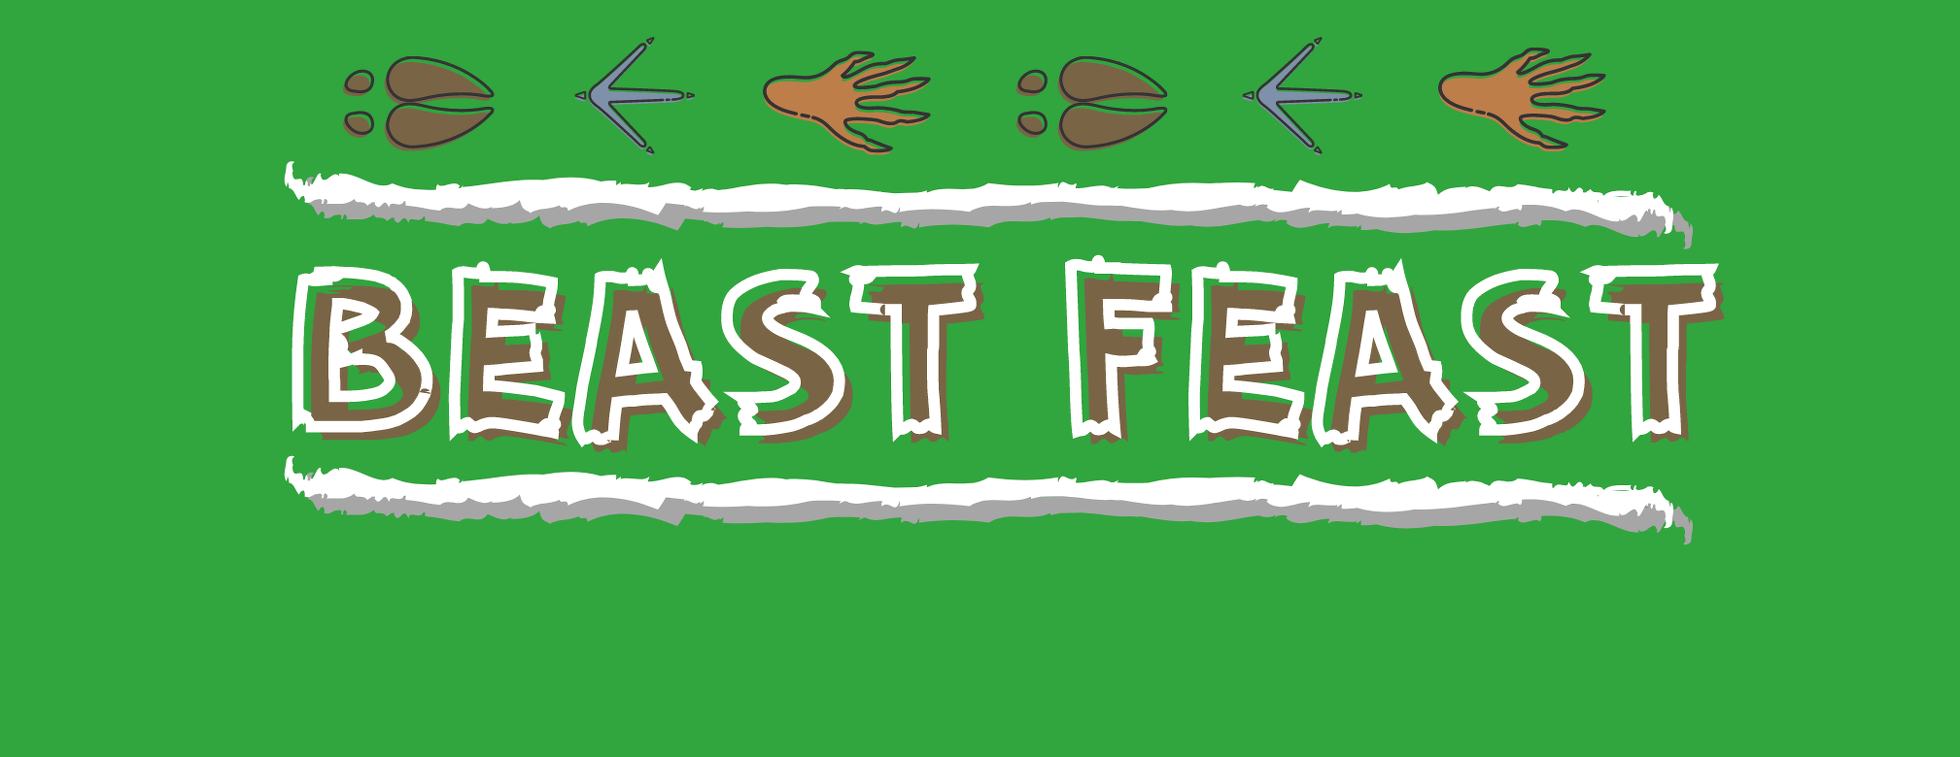 Florida FFA Beast Feast